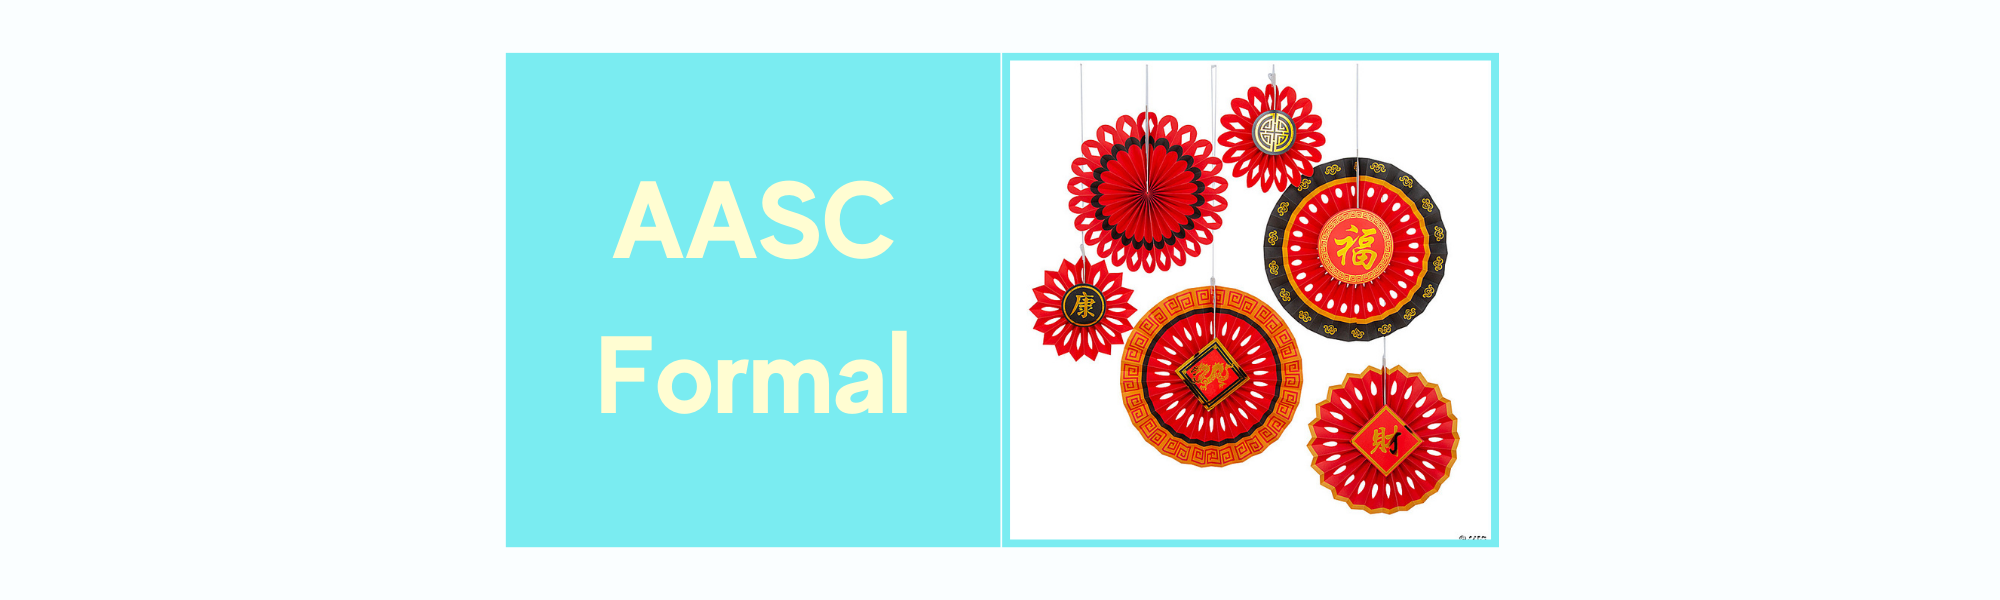 AASC-Formal.png